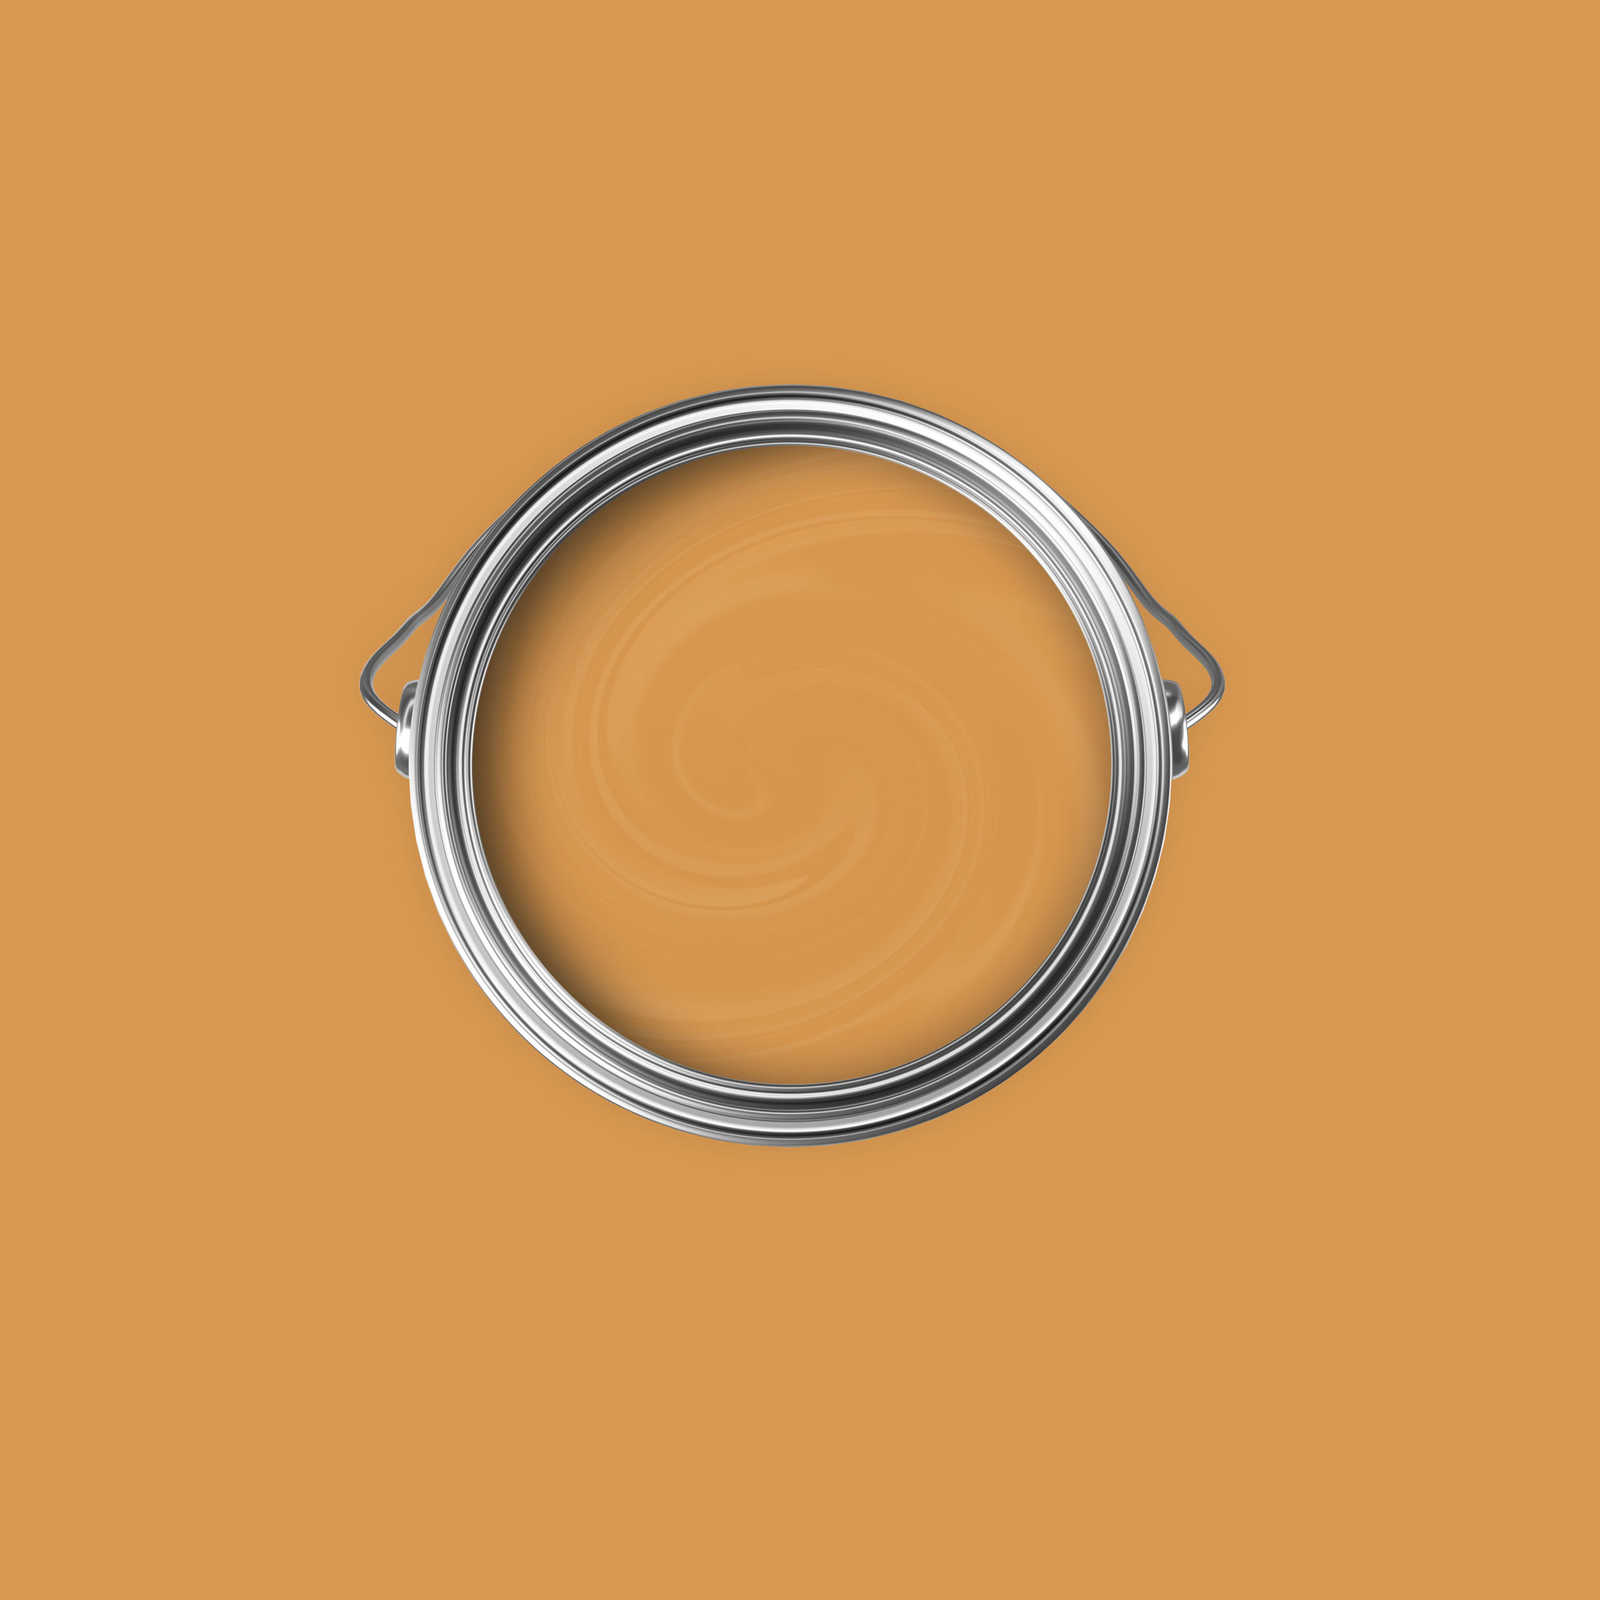             Premium Wandfarbe warmherziges Orange »Beige Orange/Sassy Saffron« NW813 – 2,5 Liter
        